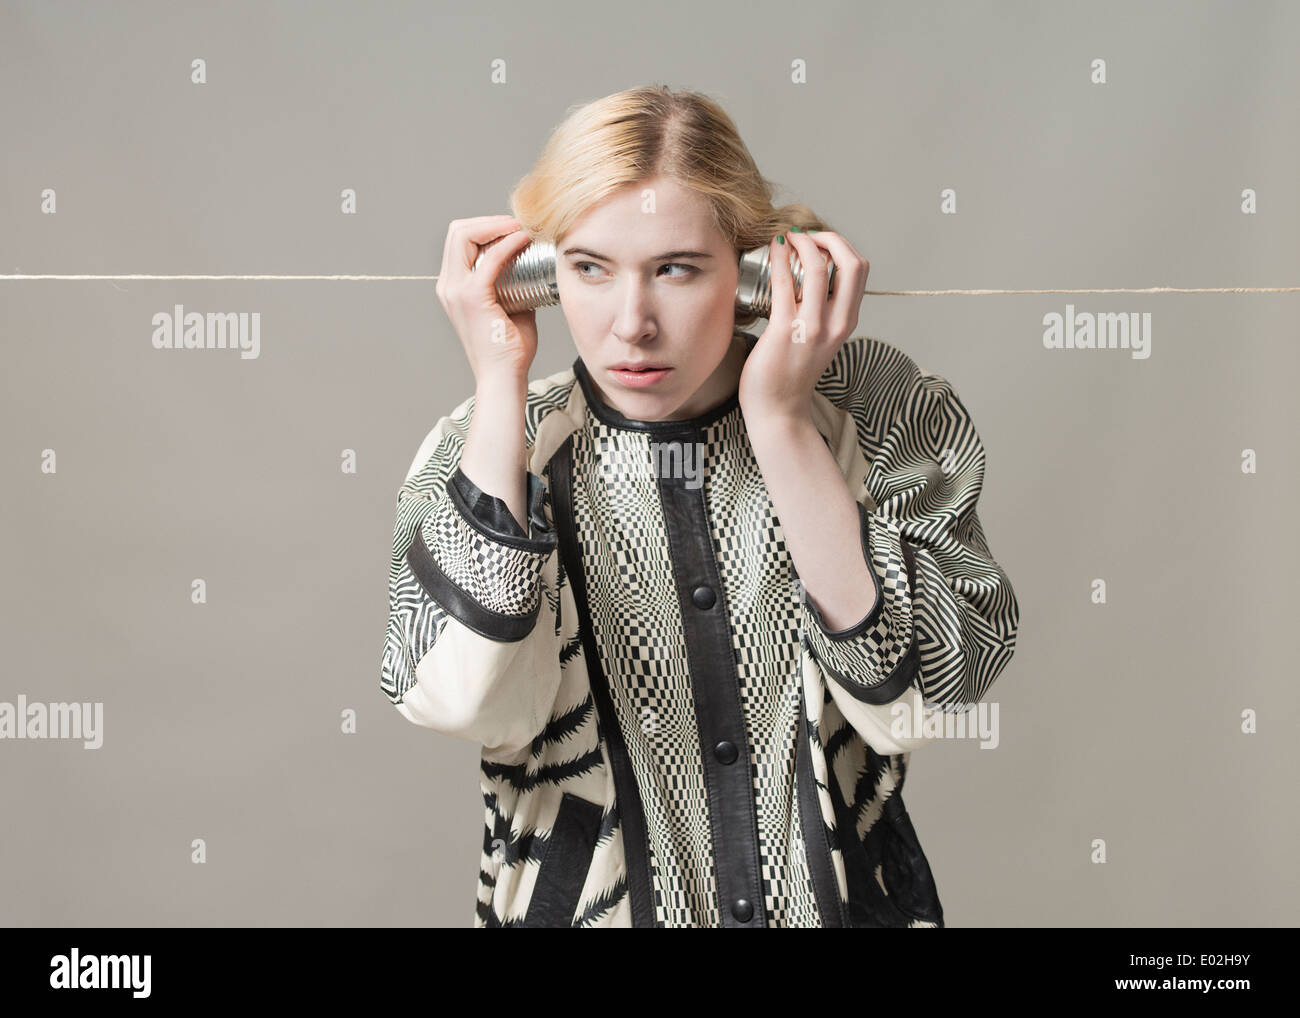 Blonde Frau mit Blechdose Telefon hören. Konzeptbild von Spionage, Überwachung und Kommunikation. Stockfoto